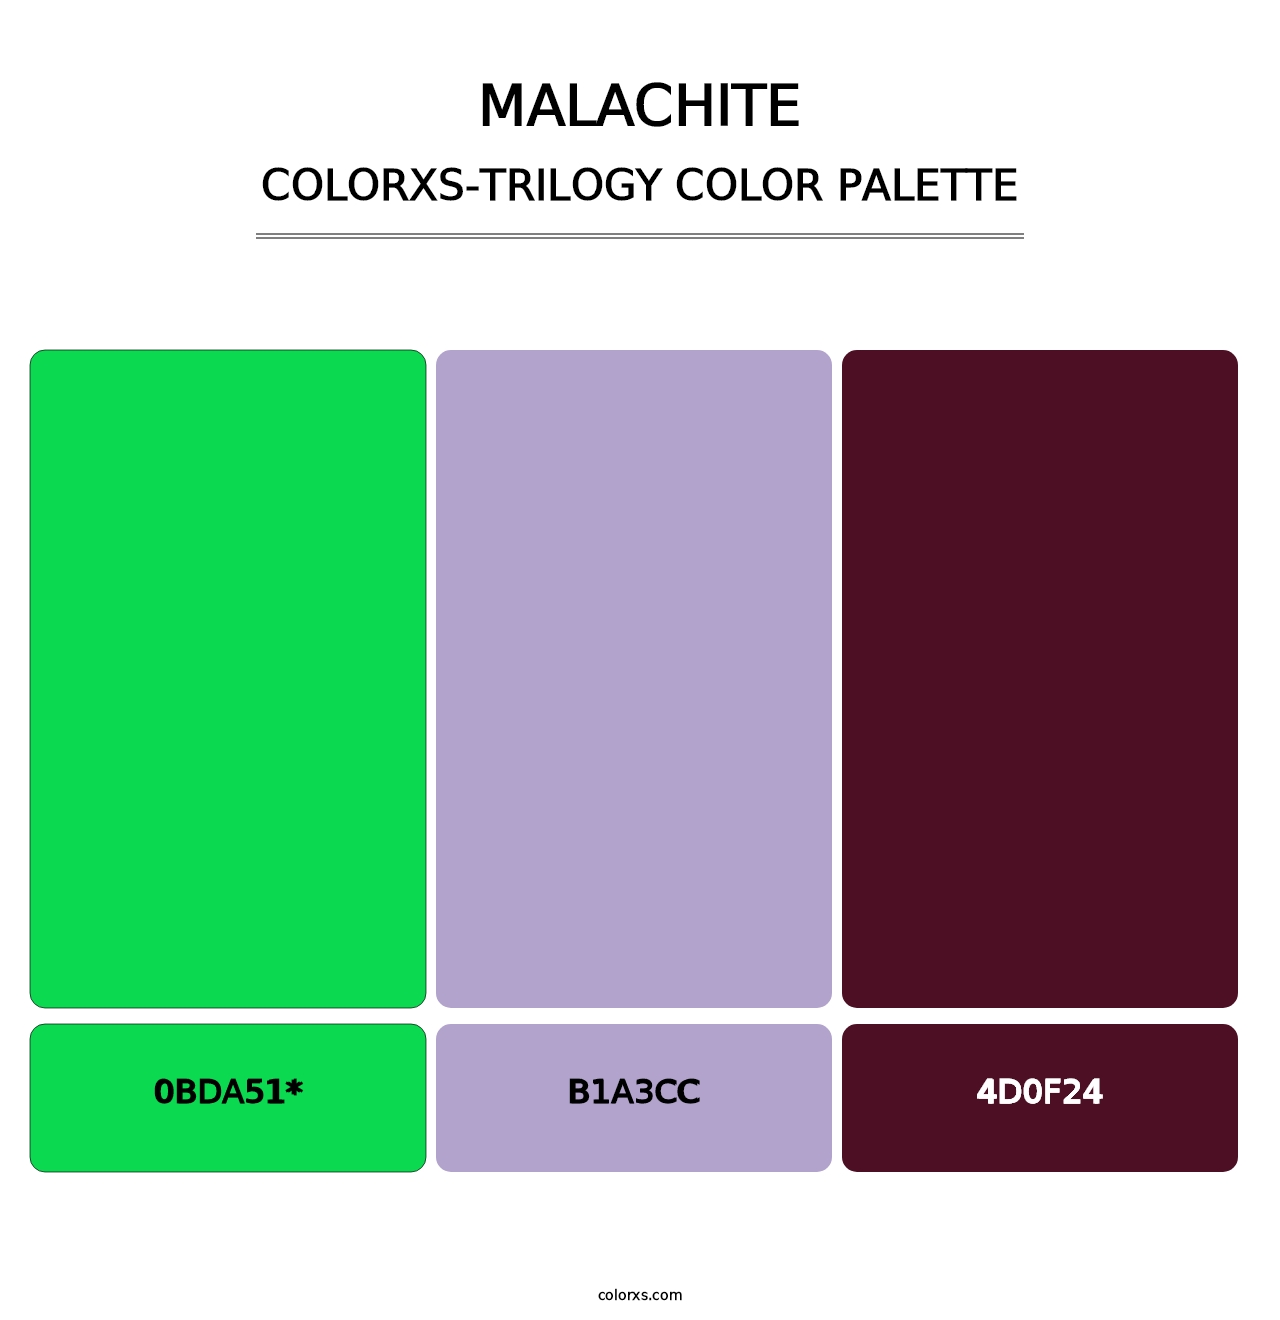 Malachite - Colorxs Trilogy Palette